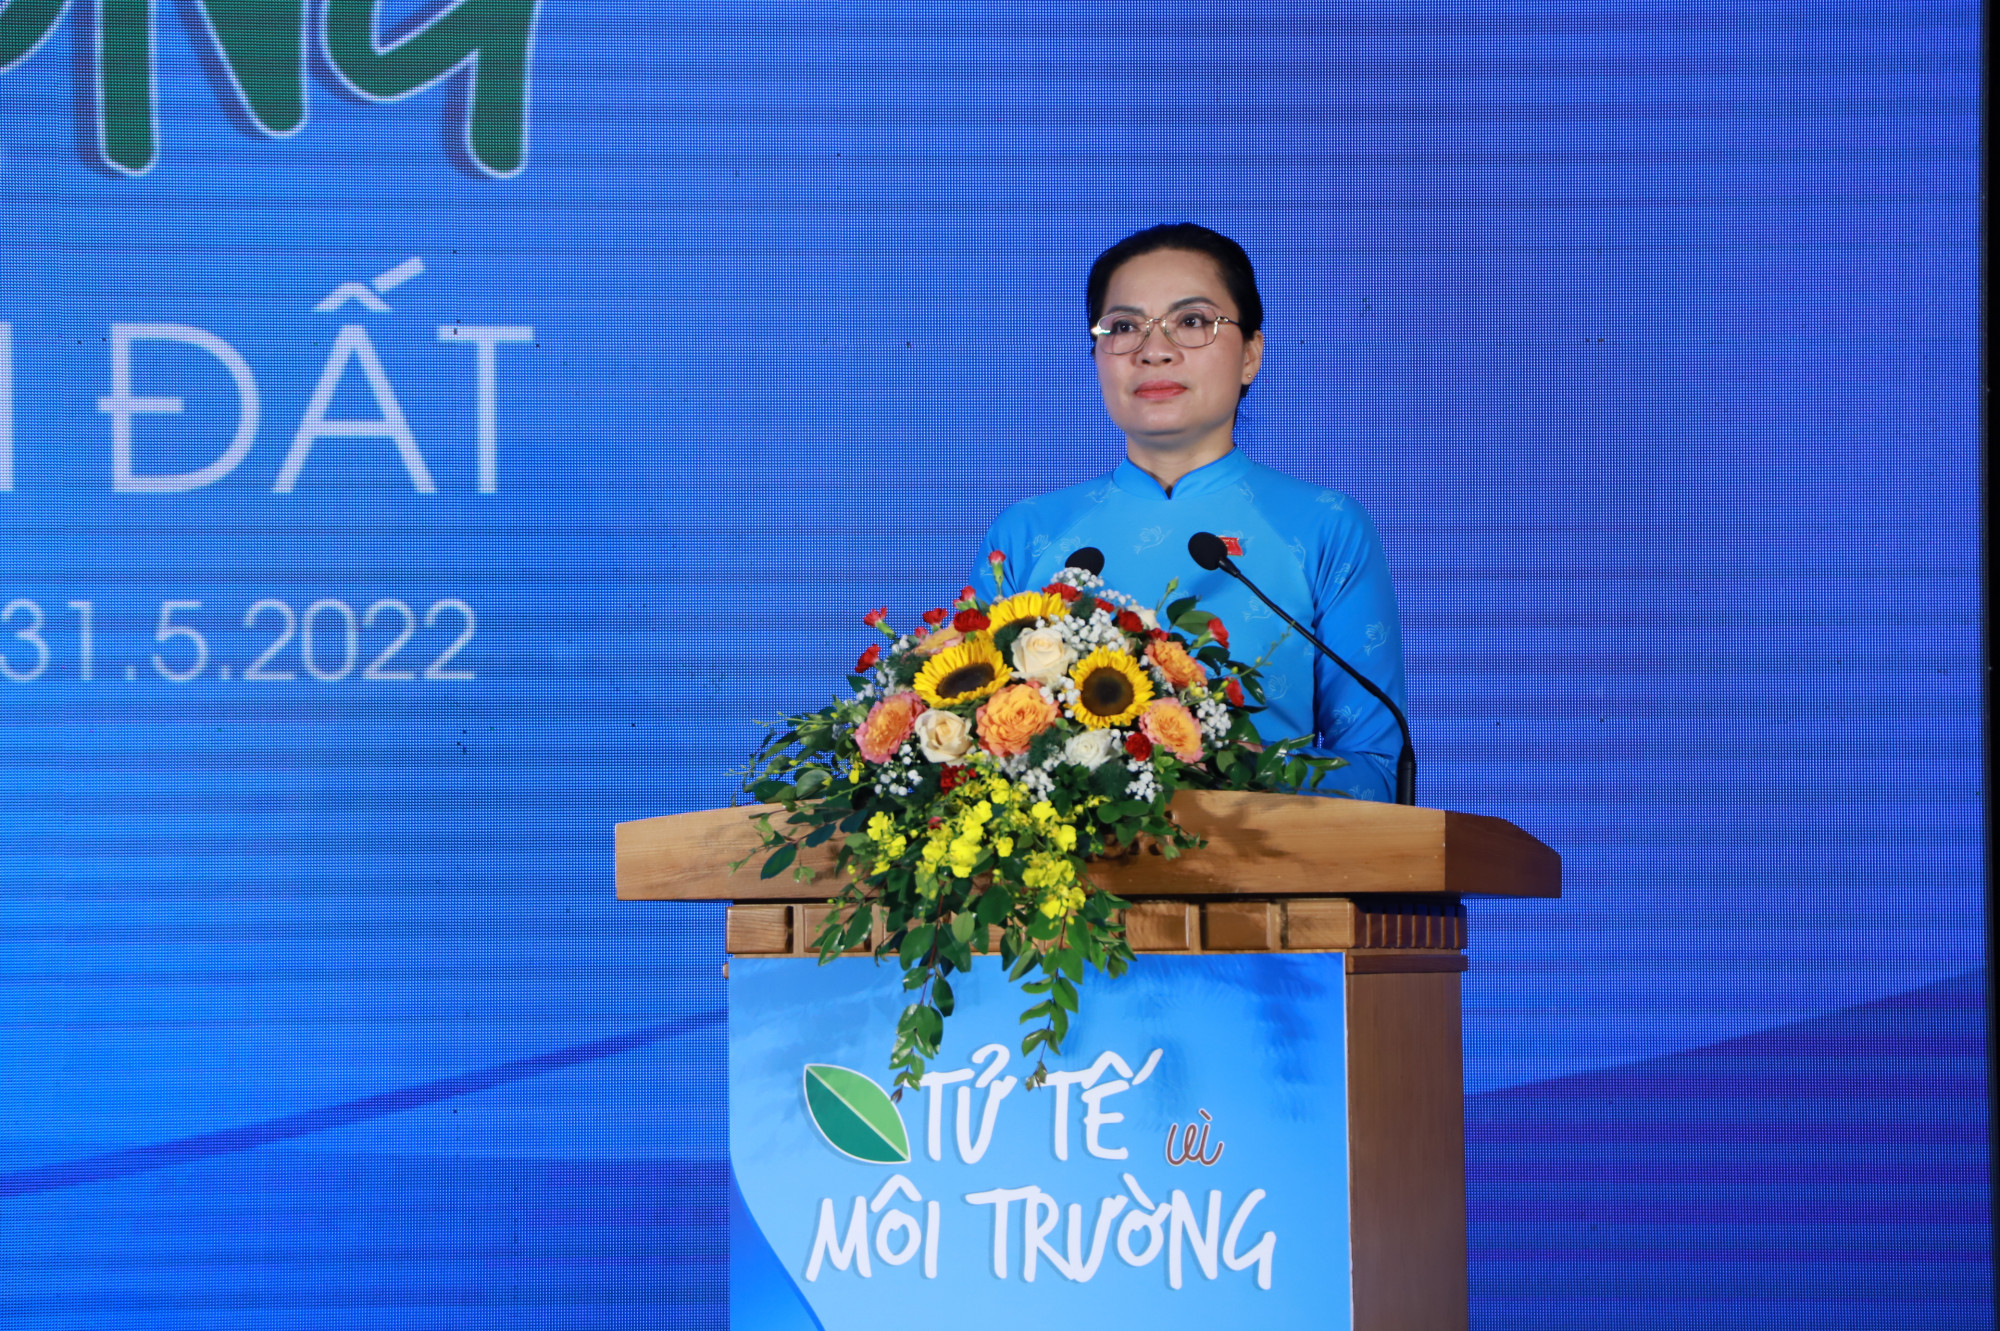 Bà Hà Thị Nga kêu gọi phụ nữ hãy bảo vệ môi trường từ hành động nhỏ nhất